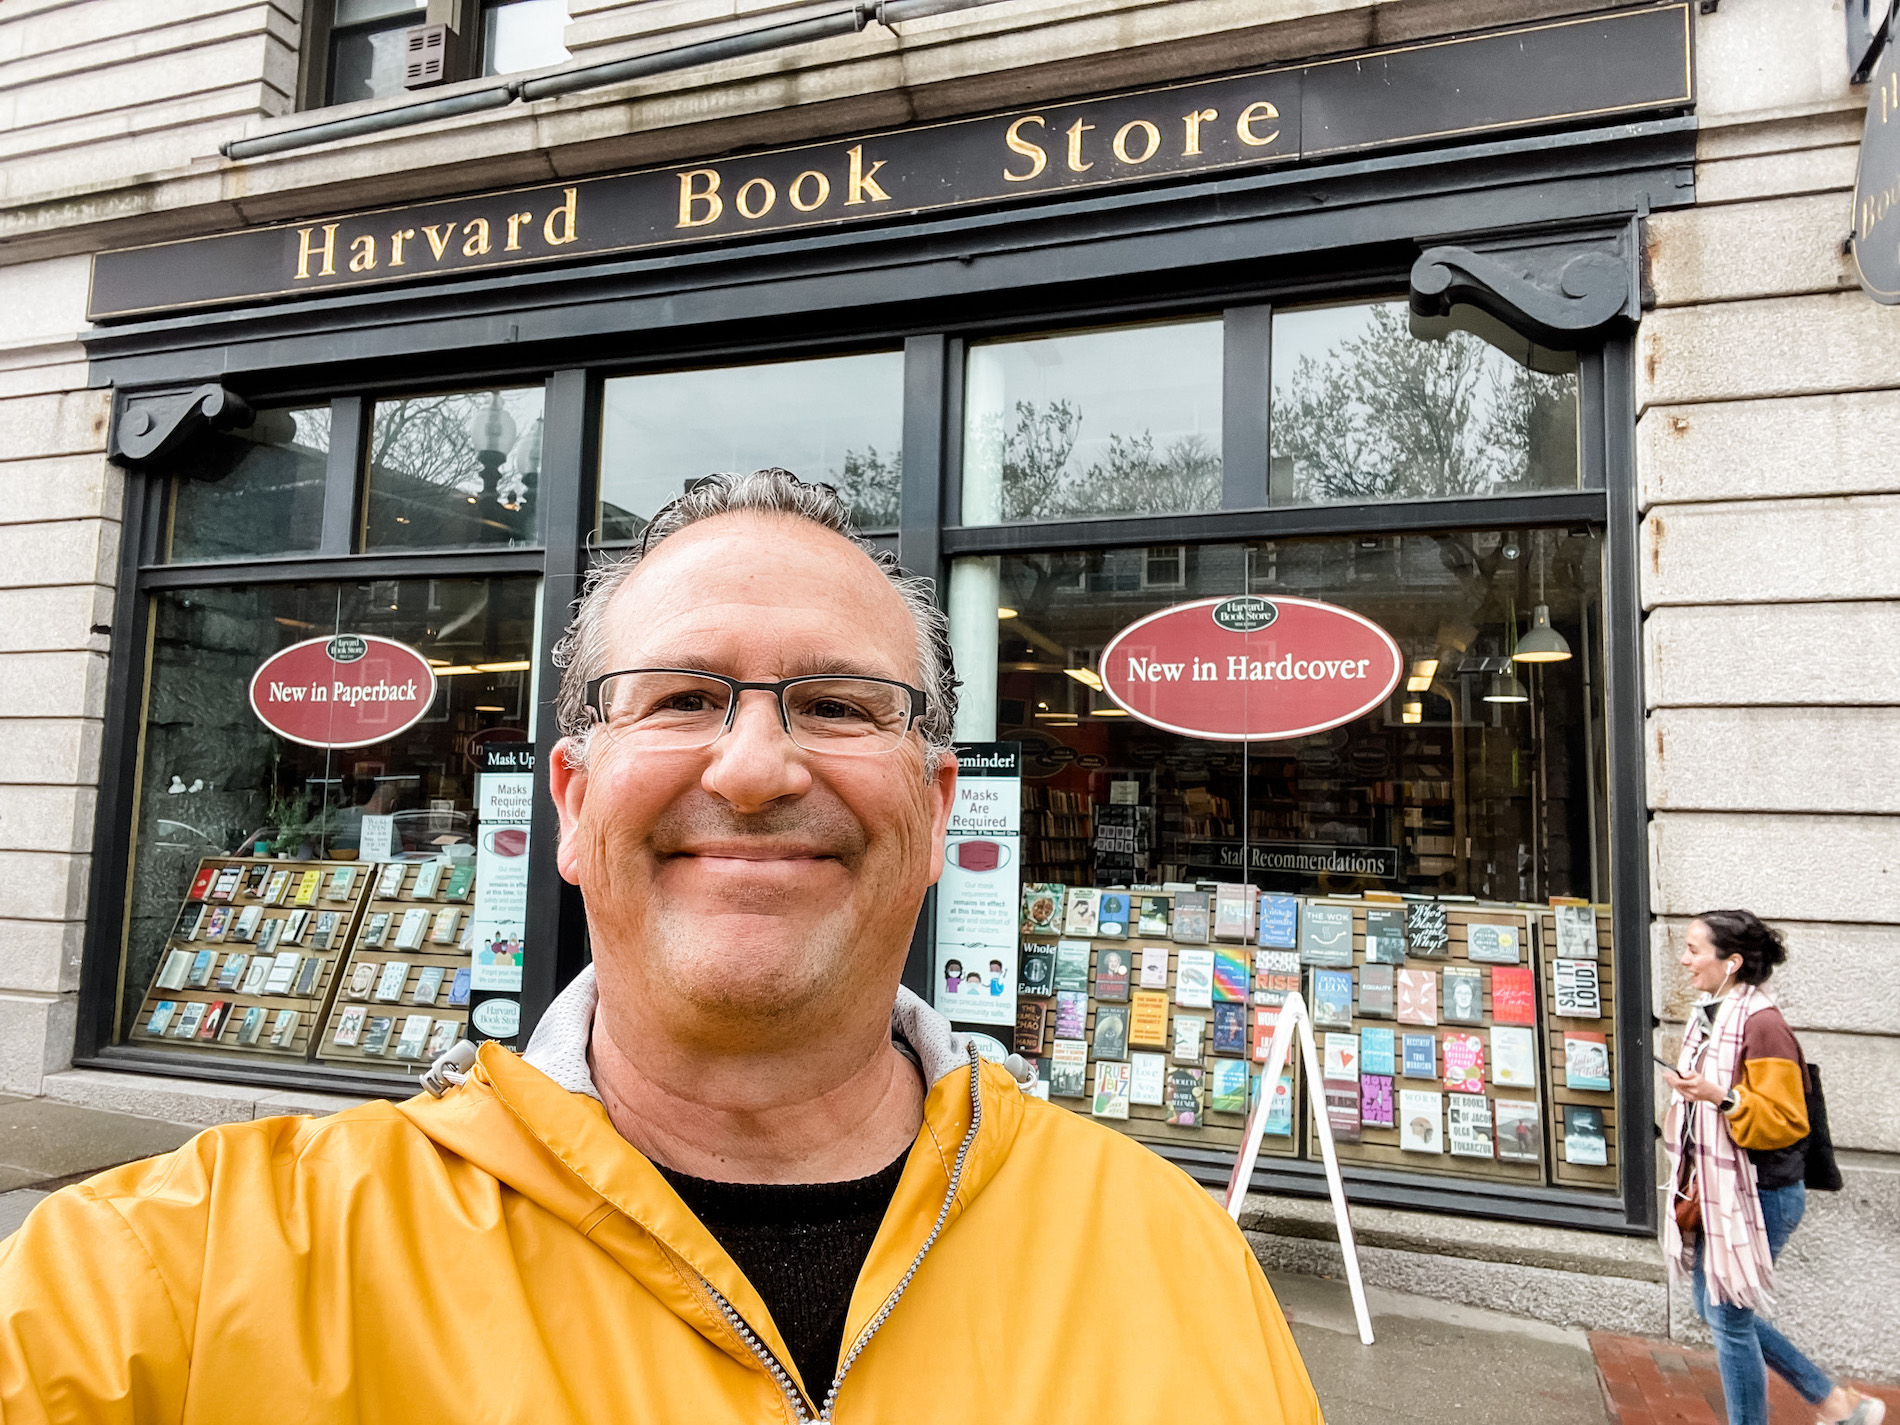 Meet me at Harvard Book Store